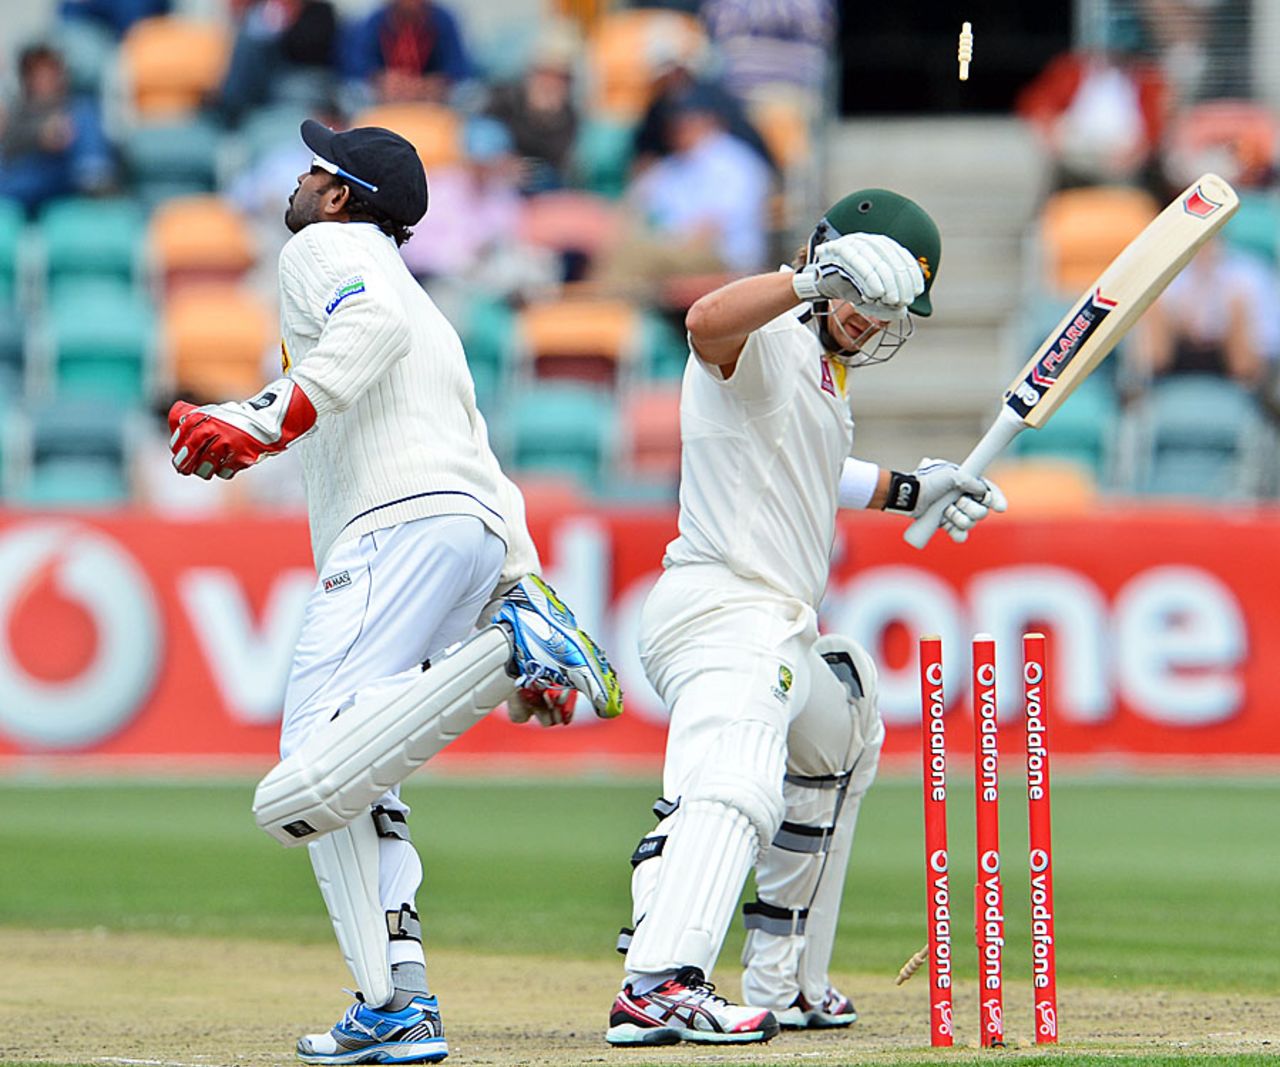 Shane Watson was stumped for 5, Australia v Sri Lanka, 1st Test, Hobart, 4th day, December 17, 2012